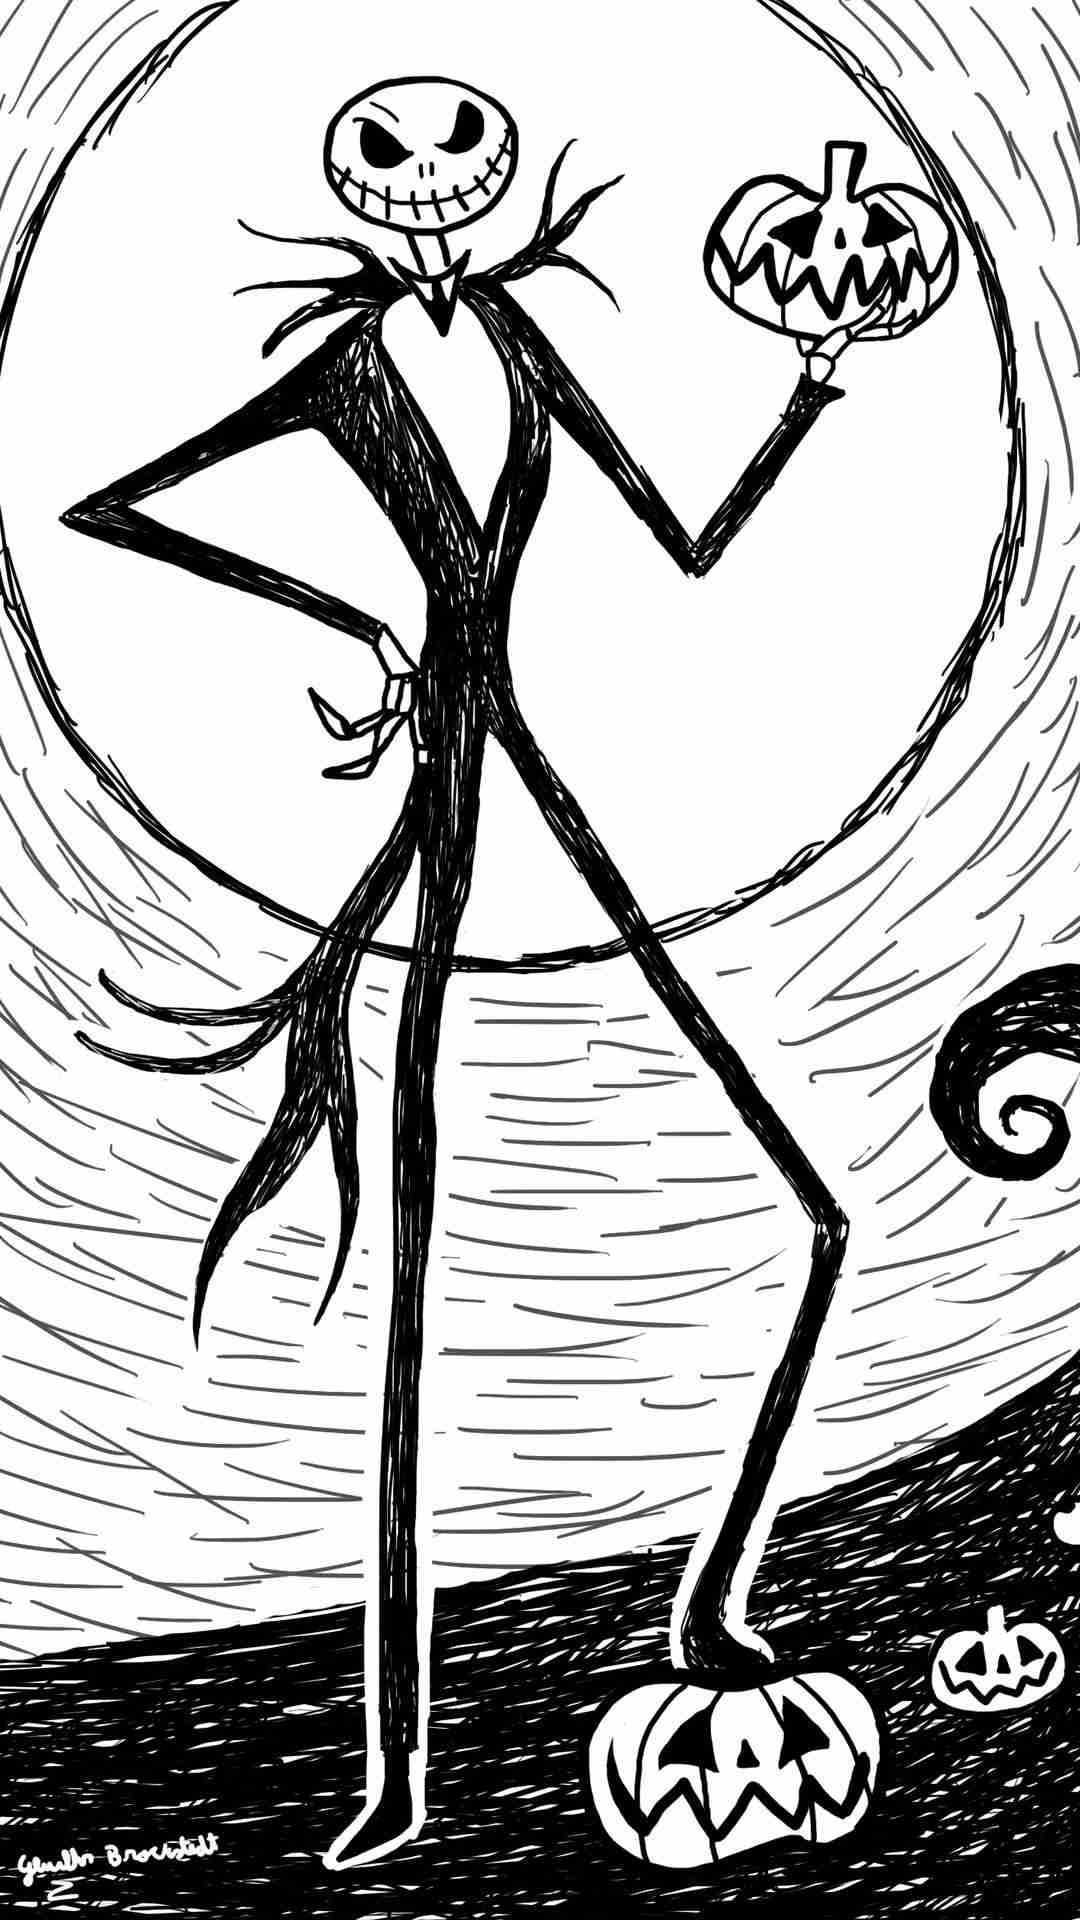 jack scheletro sfondo,linea artistica,cartone animato,bianco e nero,illustrazione,personaggio fittizio